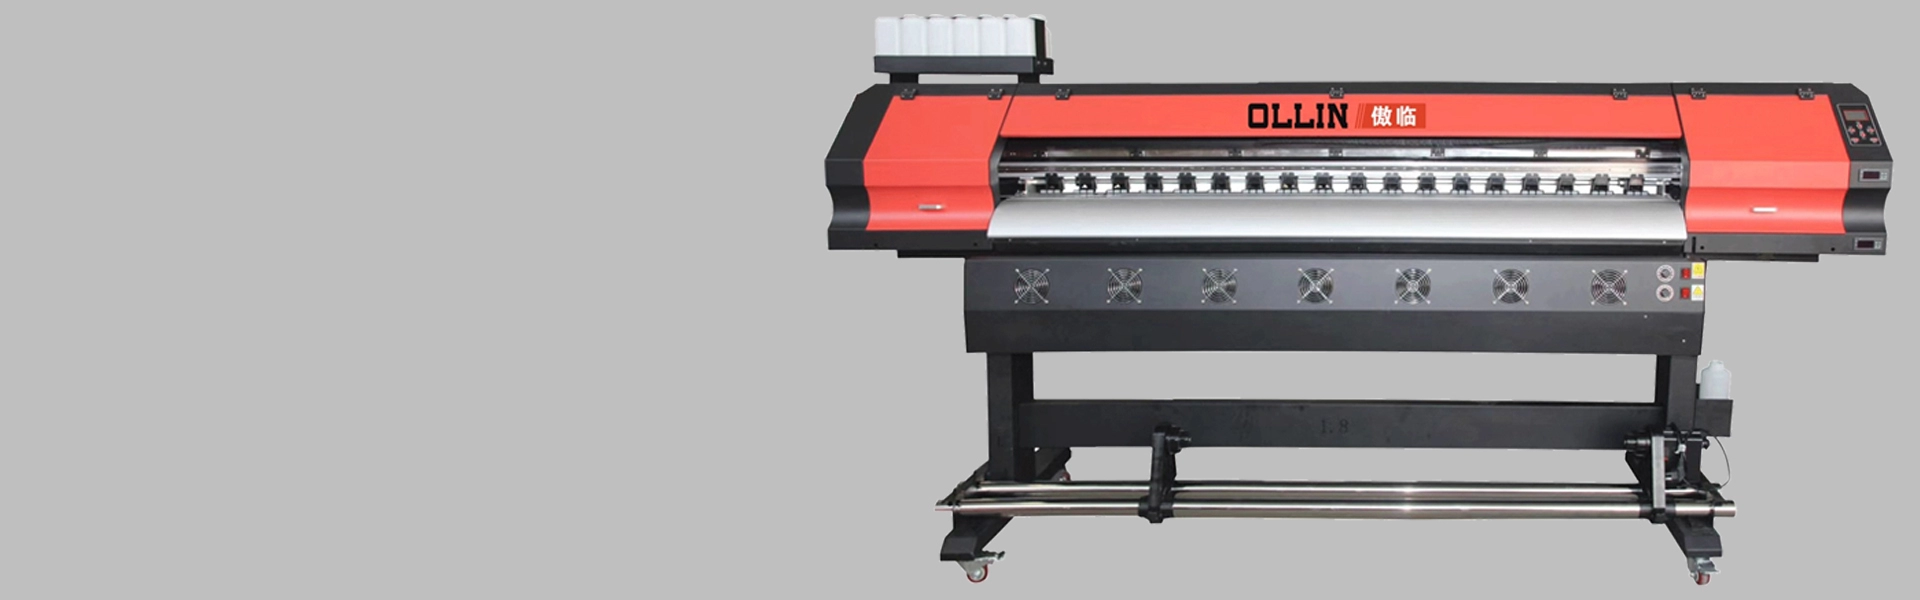 Impresora de sublimación de 1,9 m OL-190